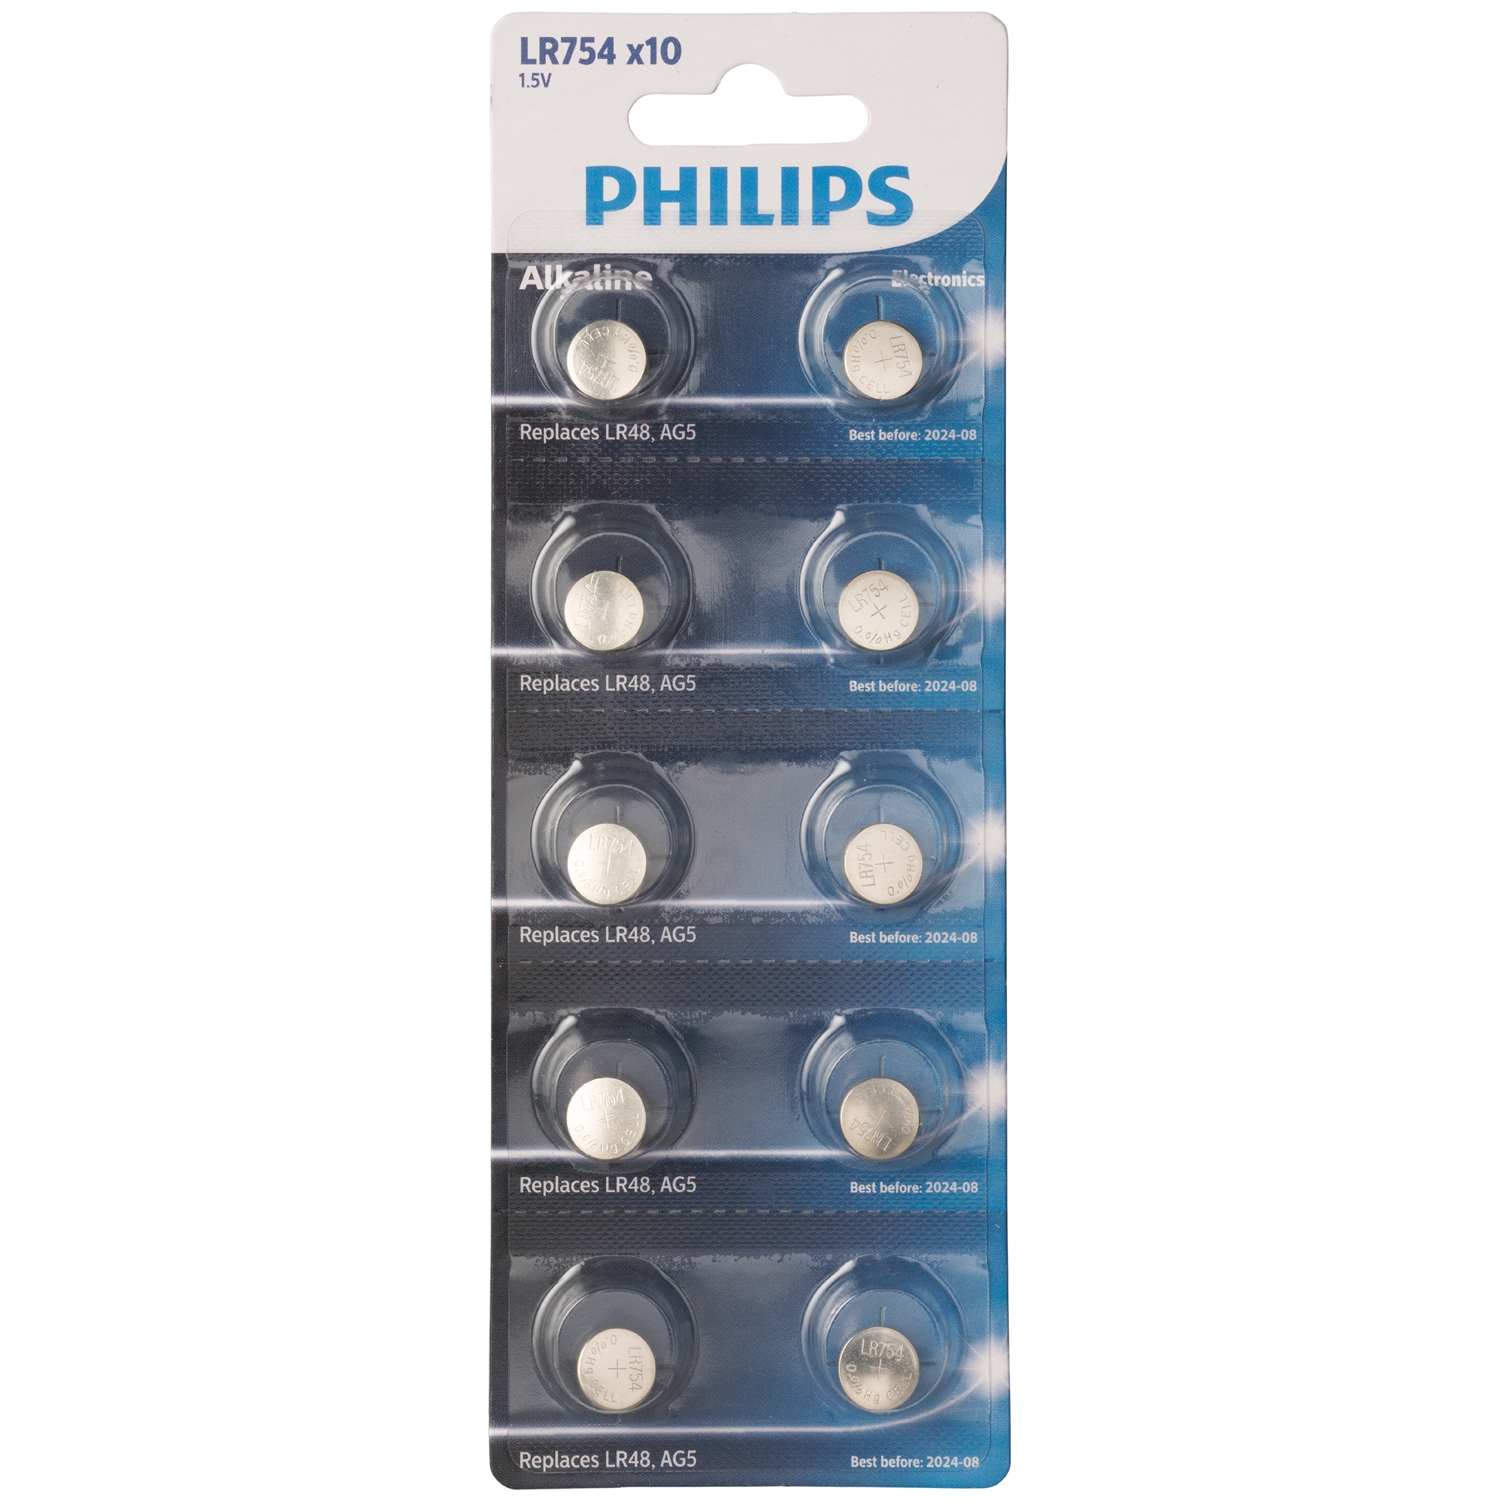 Philips Philips Alkaline LR754 Batterier 10 stk. - Sølv